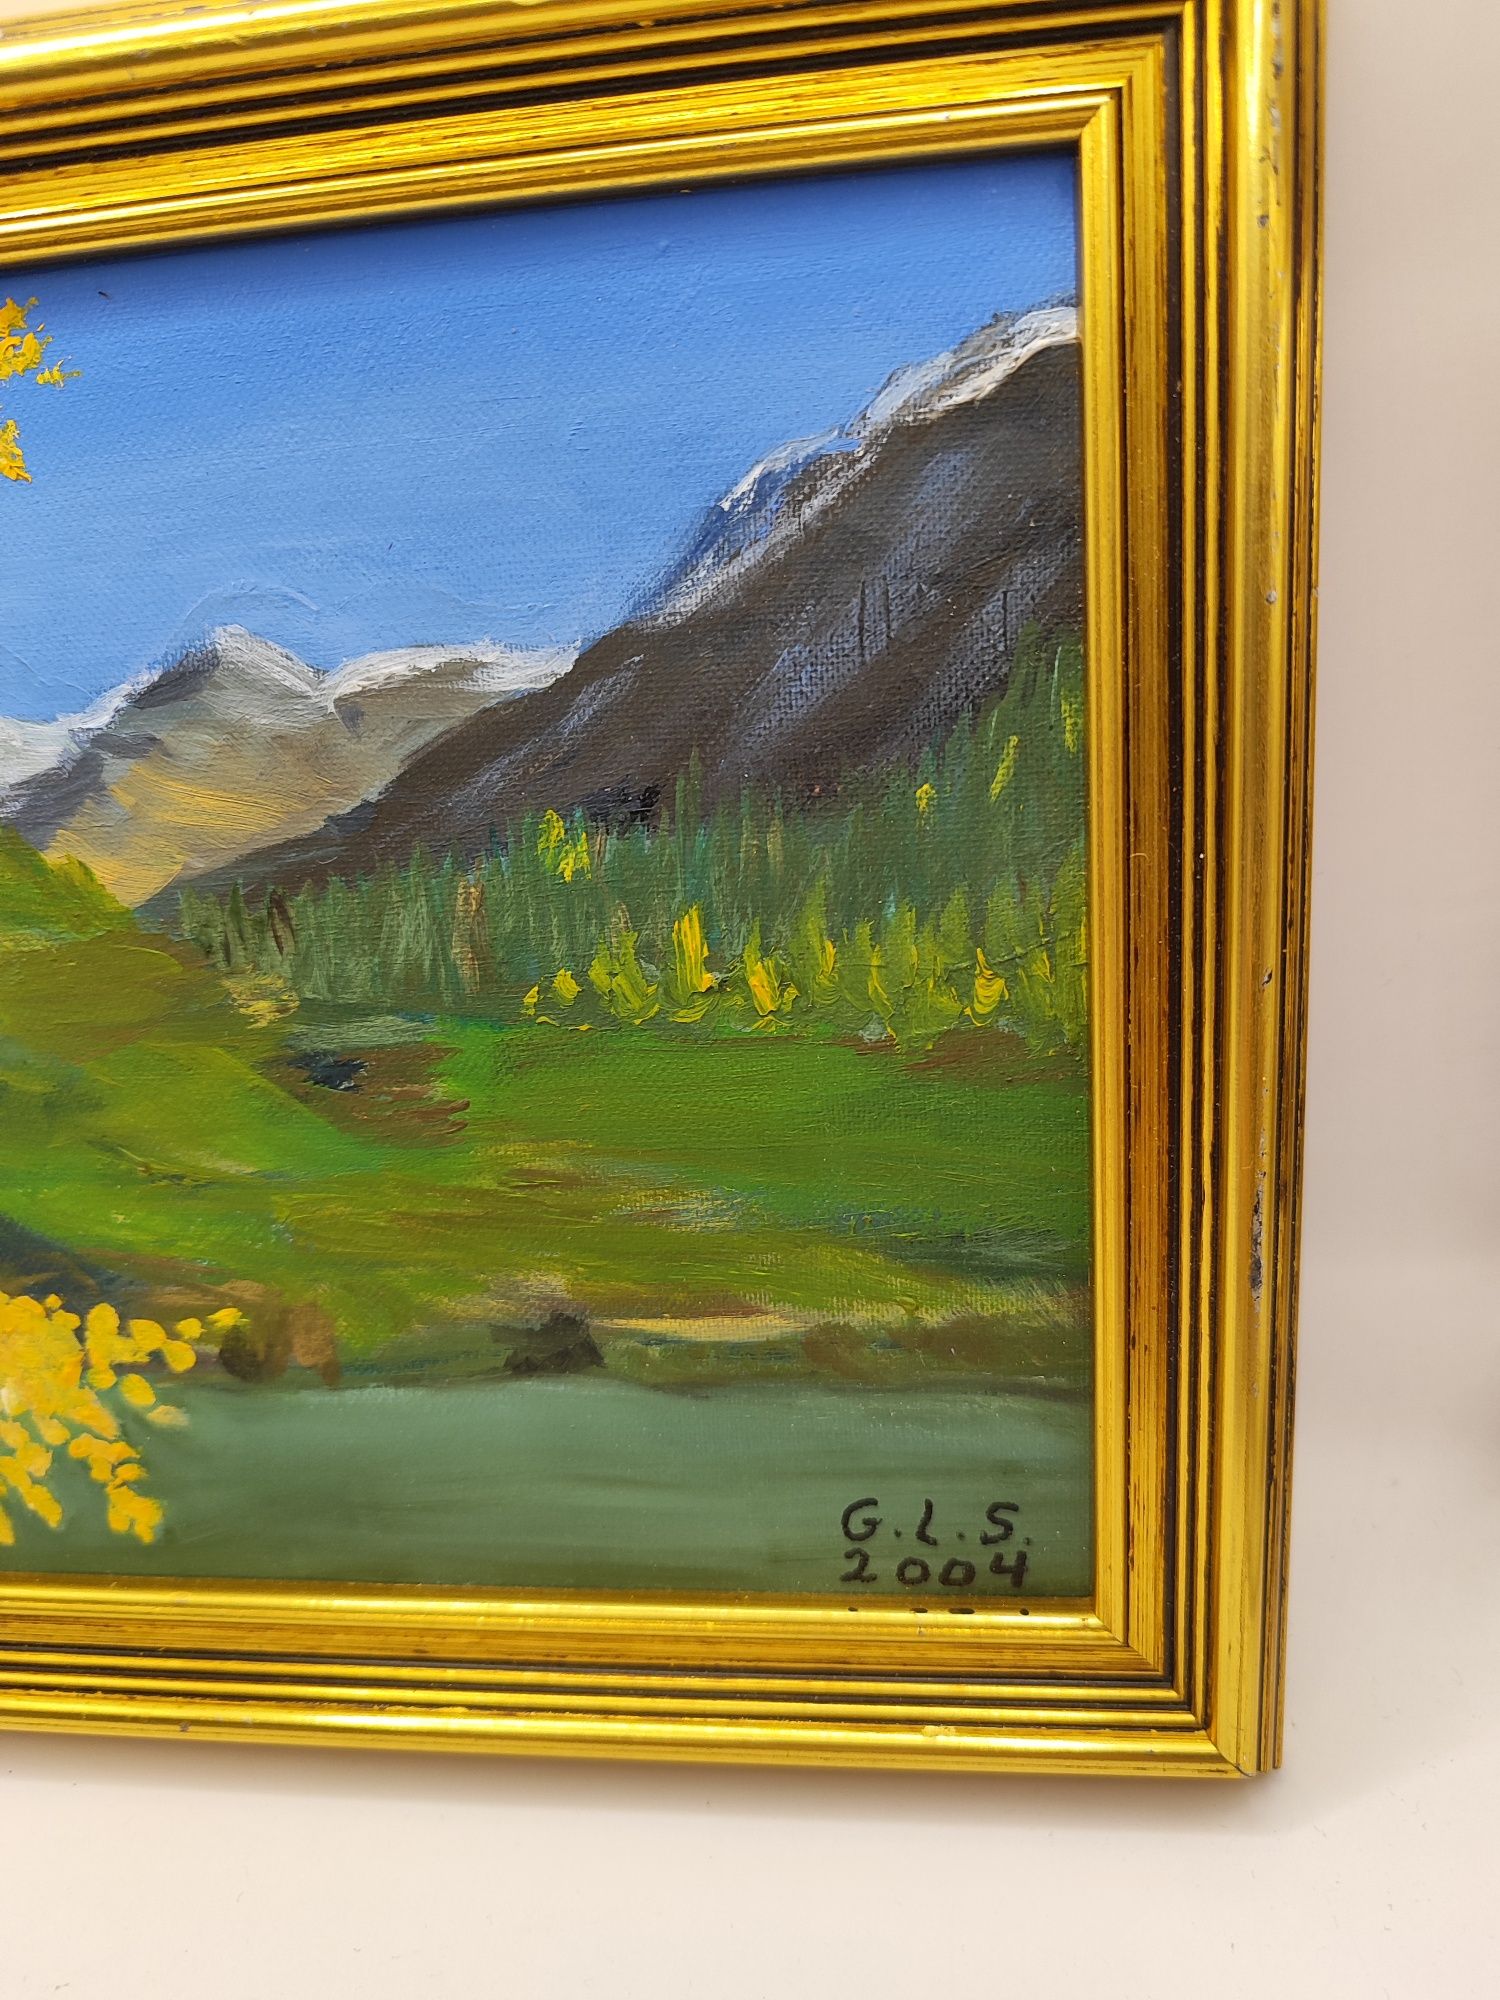 Obraz olejny w ramie pejzaż góry datowany 2004 r dekoracja ścienna